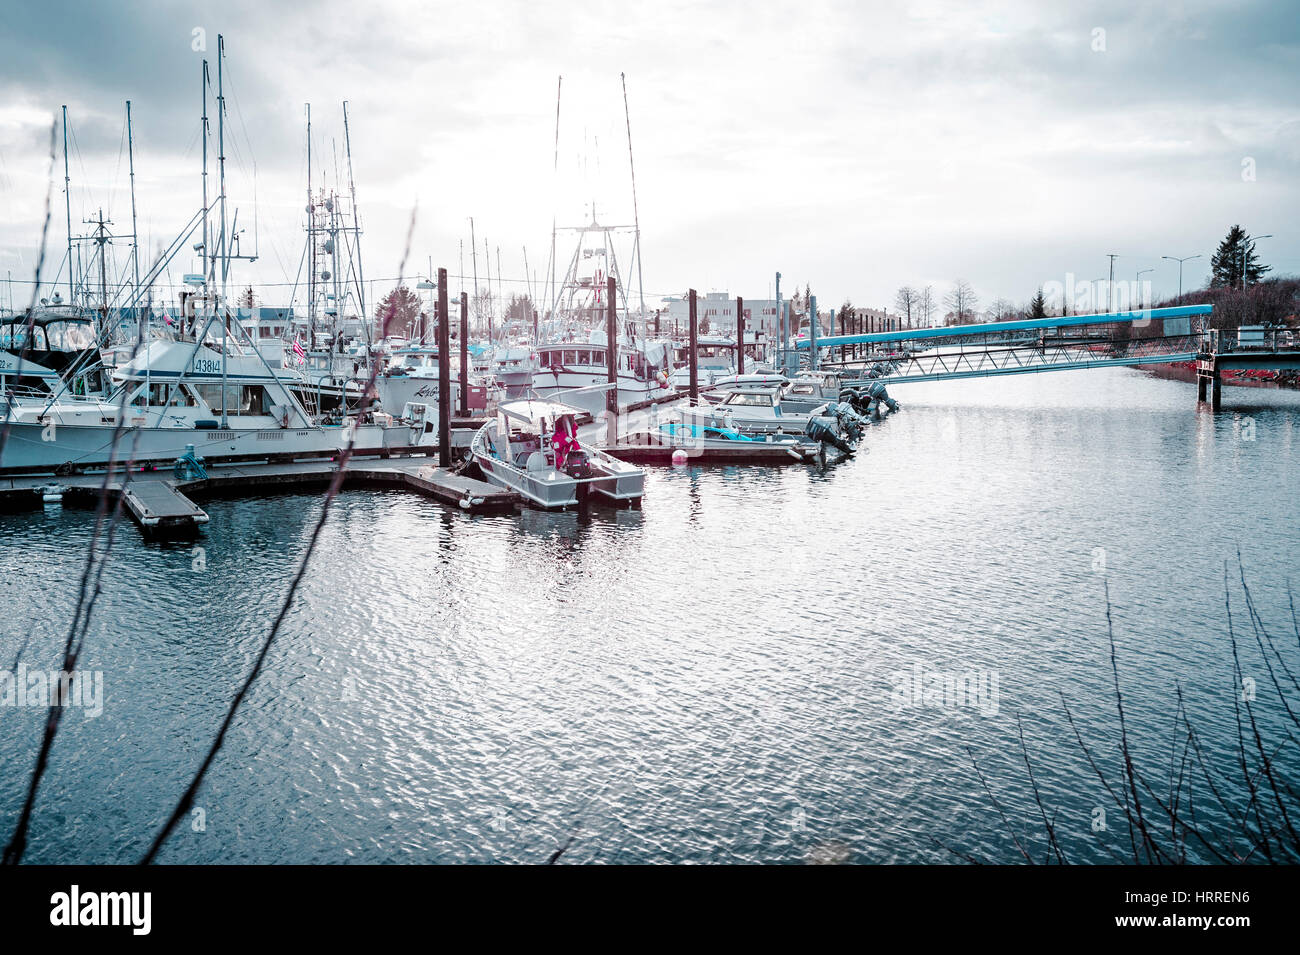 Am späten Nachmittag, mit Blick auf Abdichtung Bucht-Hafen in Sitka, Alaska, USA. Fotografie von Jeffrey Wickett, NorthLight Fotografie.  https://Northlight.blo Stockfoto